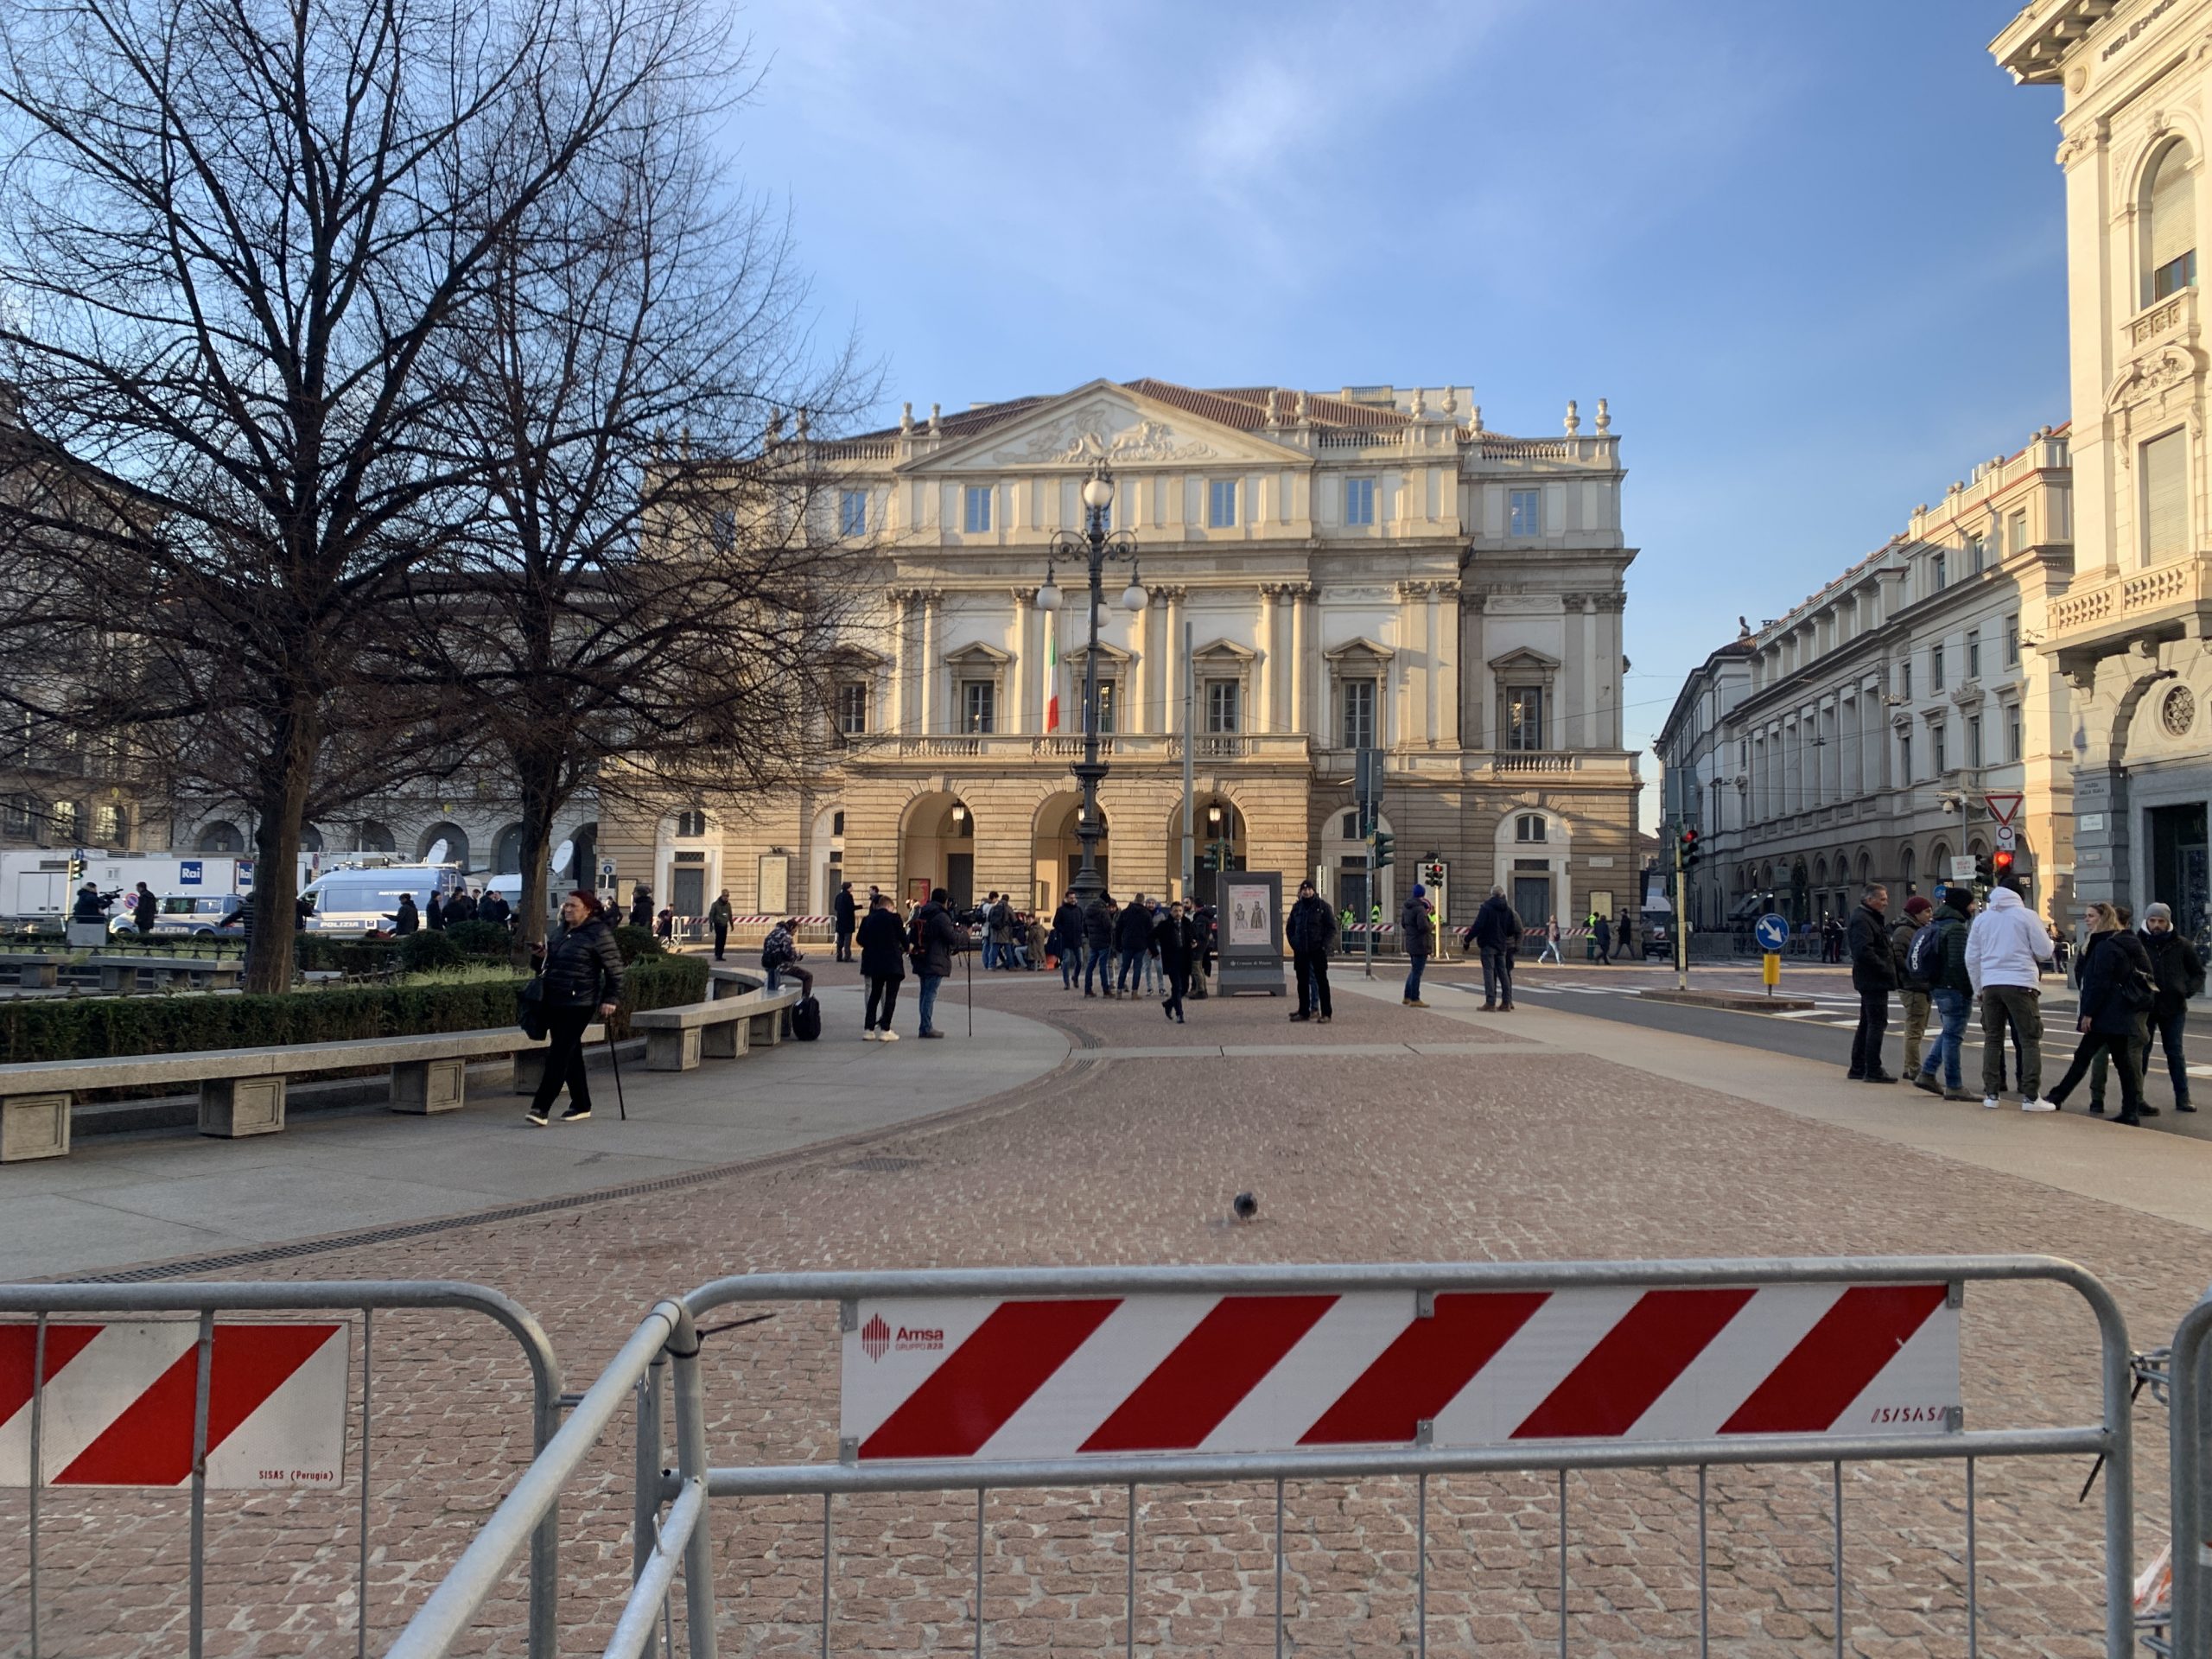 Piazza della Scala quasi vuota: le transenne impedivano ai passanti di avvicinarsi al Teatro. A loro diposizione solo un corridoio largo appena una ventina di metri.